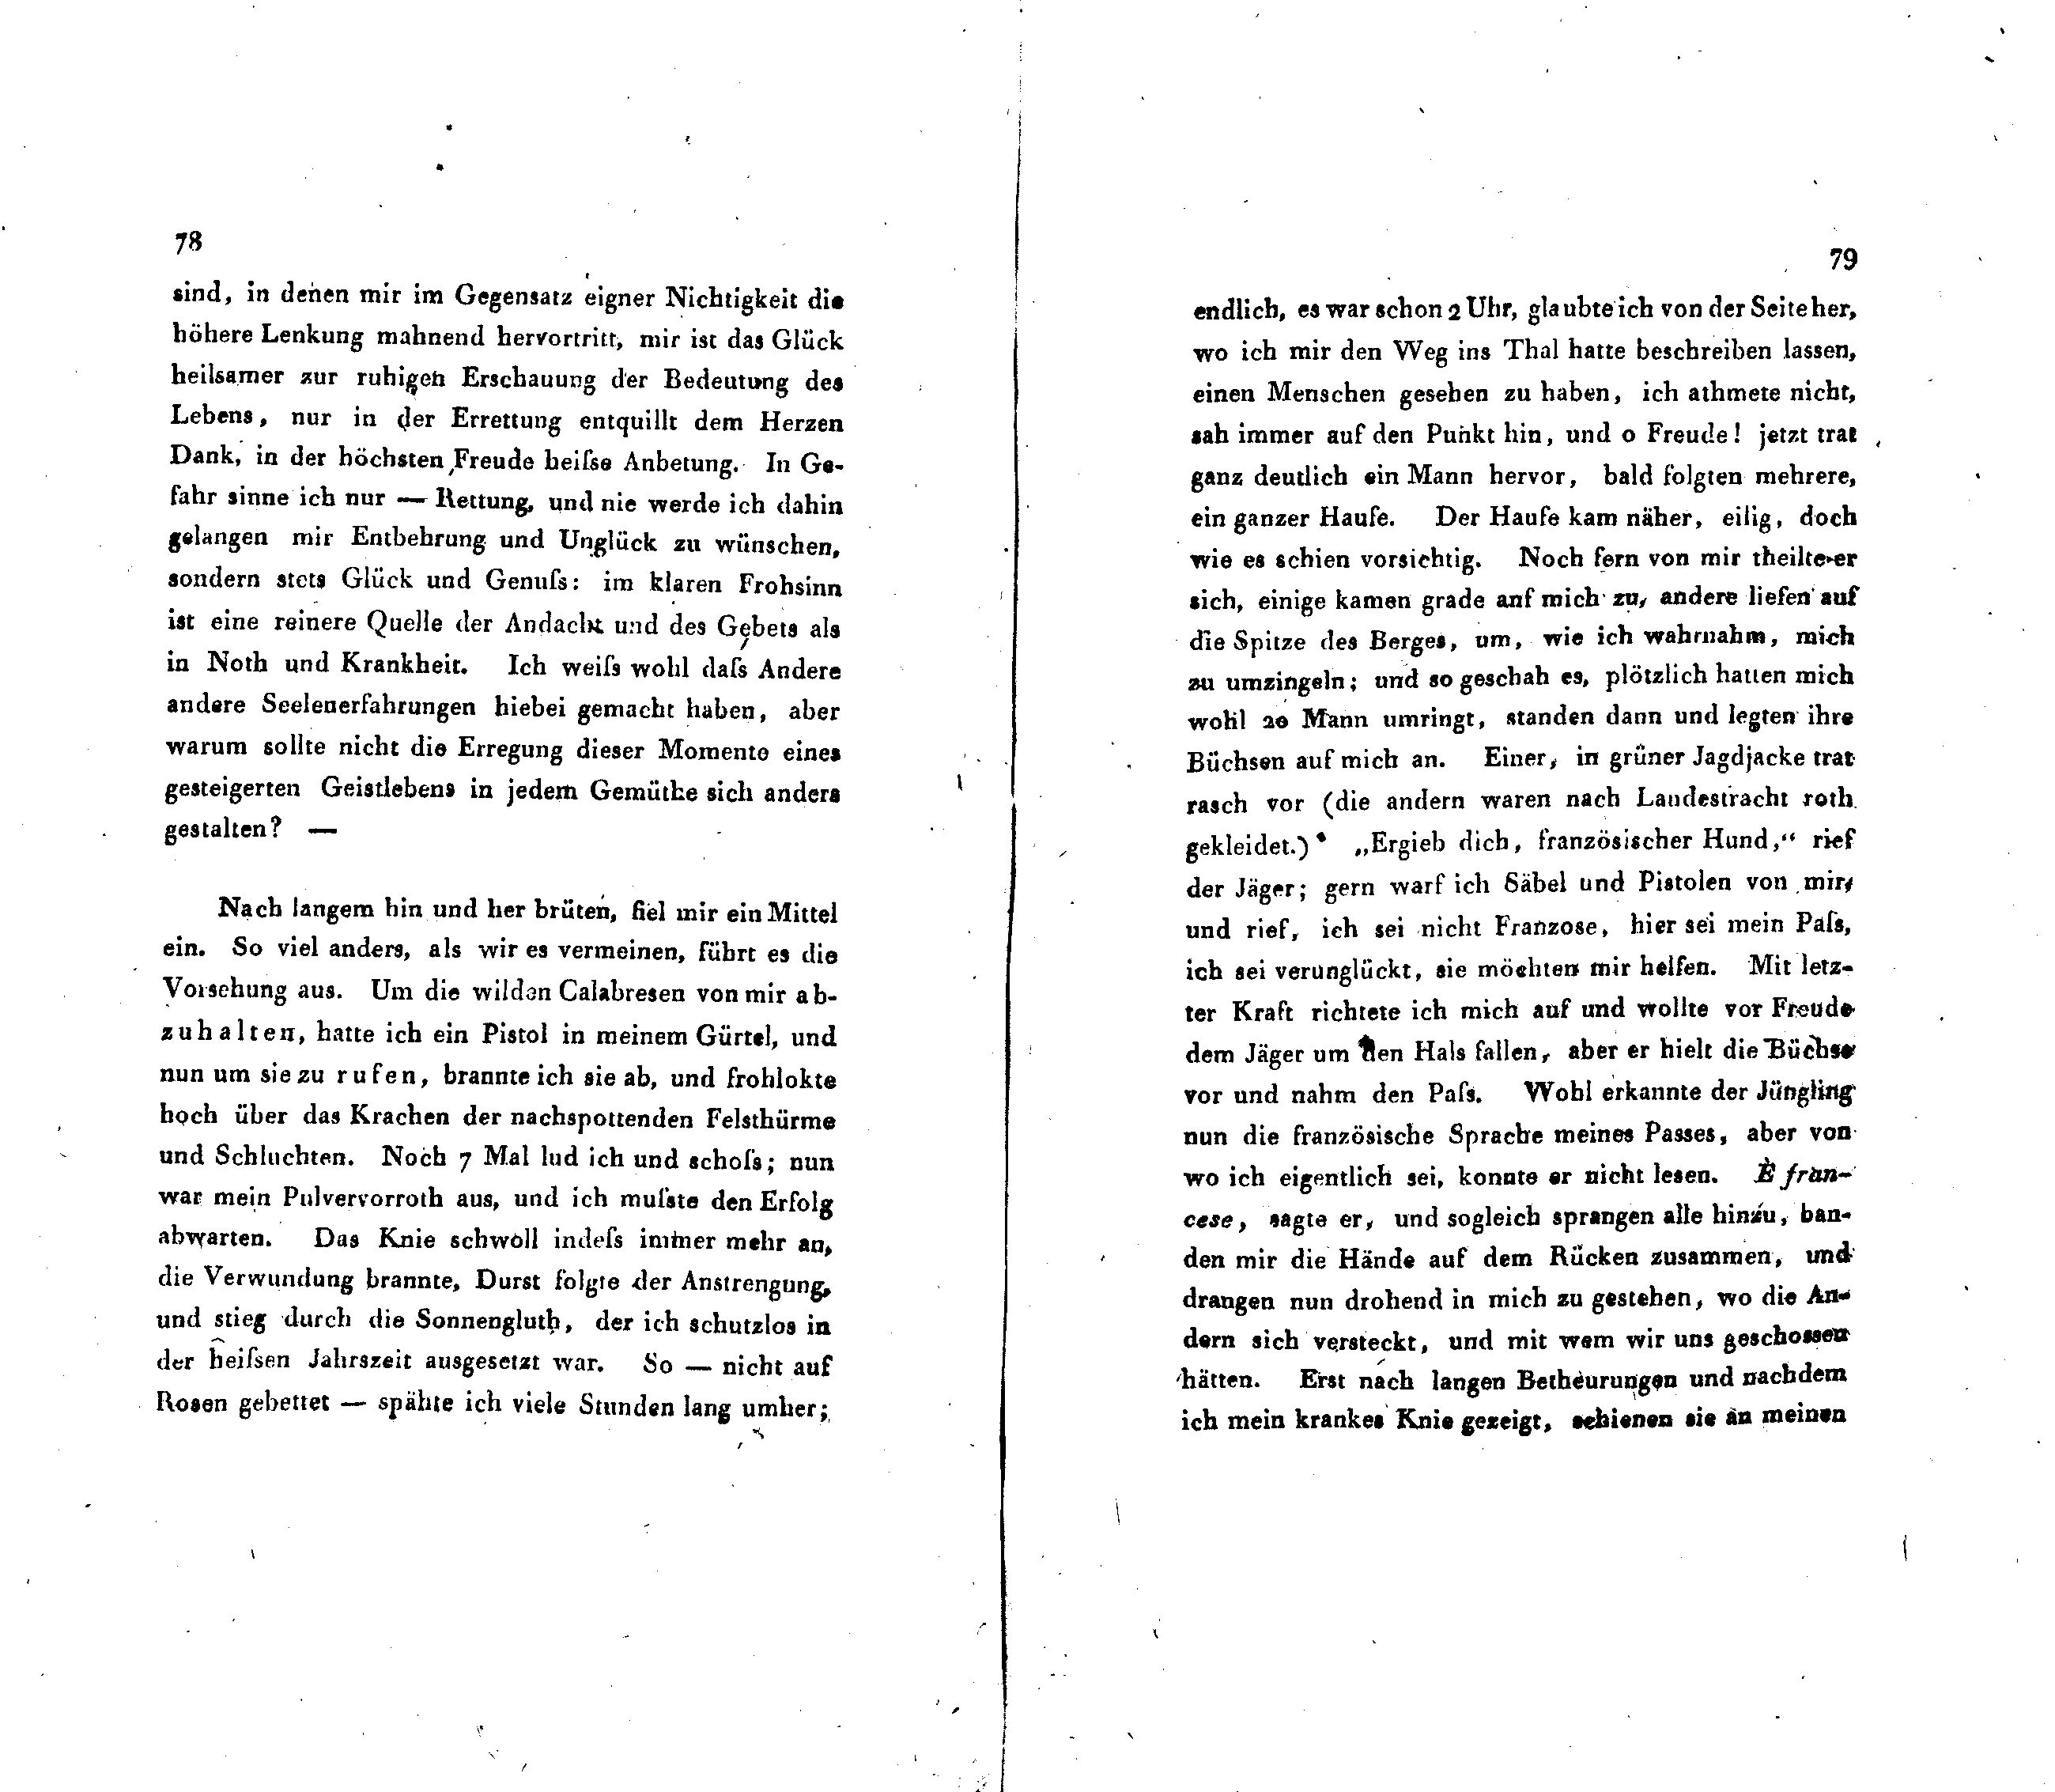 Inländisches Museum [1/2] (1820) | 43. (78-79) Основной текст